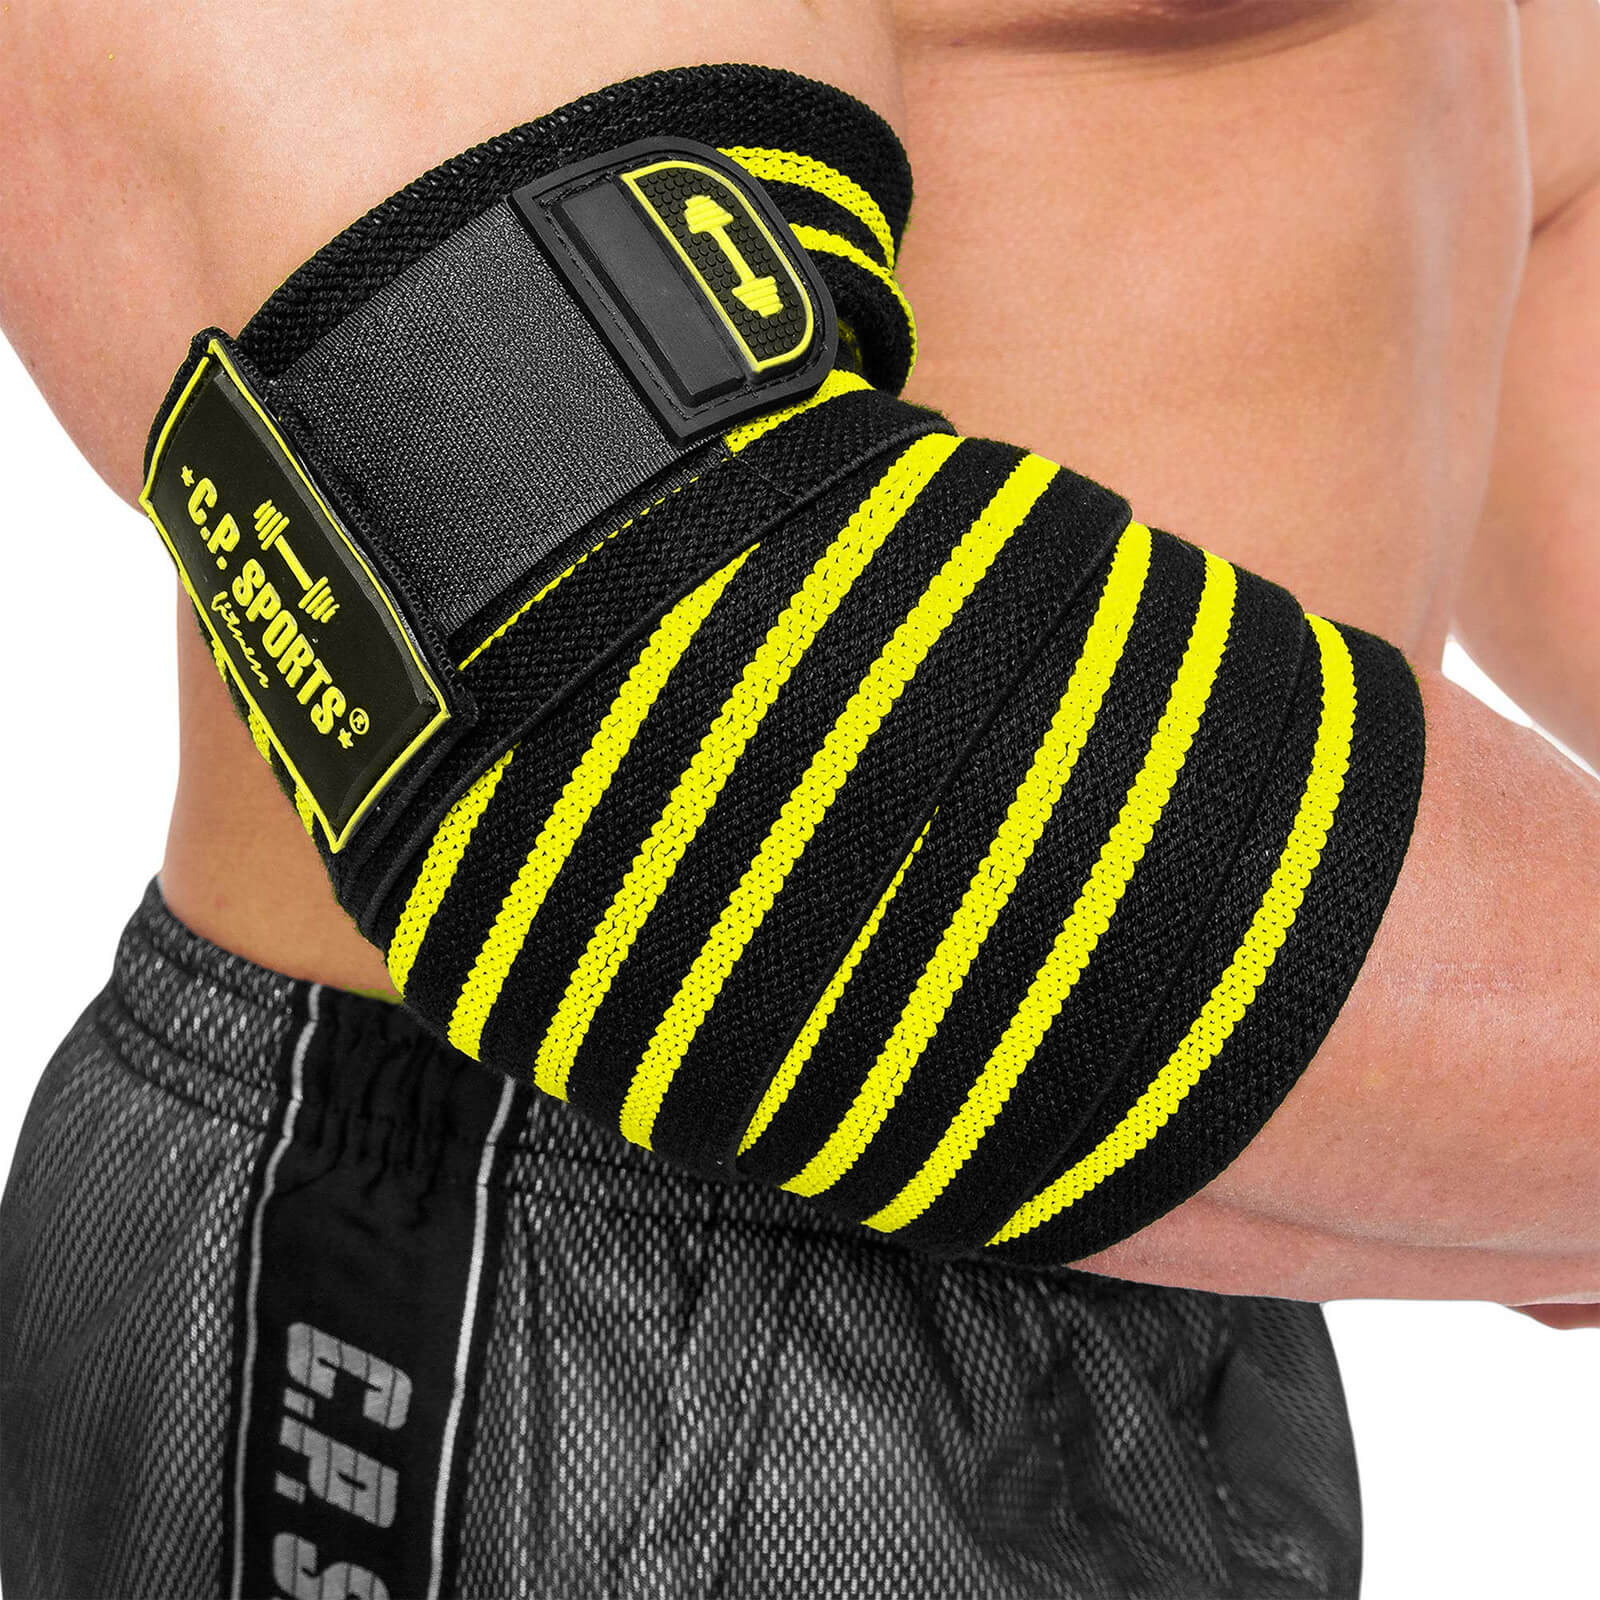 Kolla in Elbow Wraps Pro, black/yellow, C.P. Sports hos SportGymButiken.se